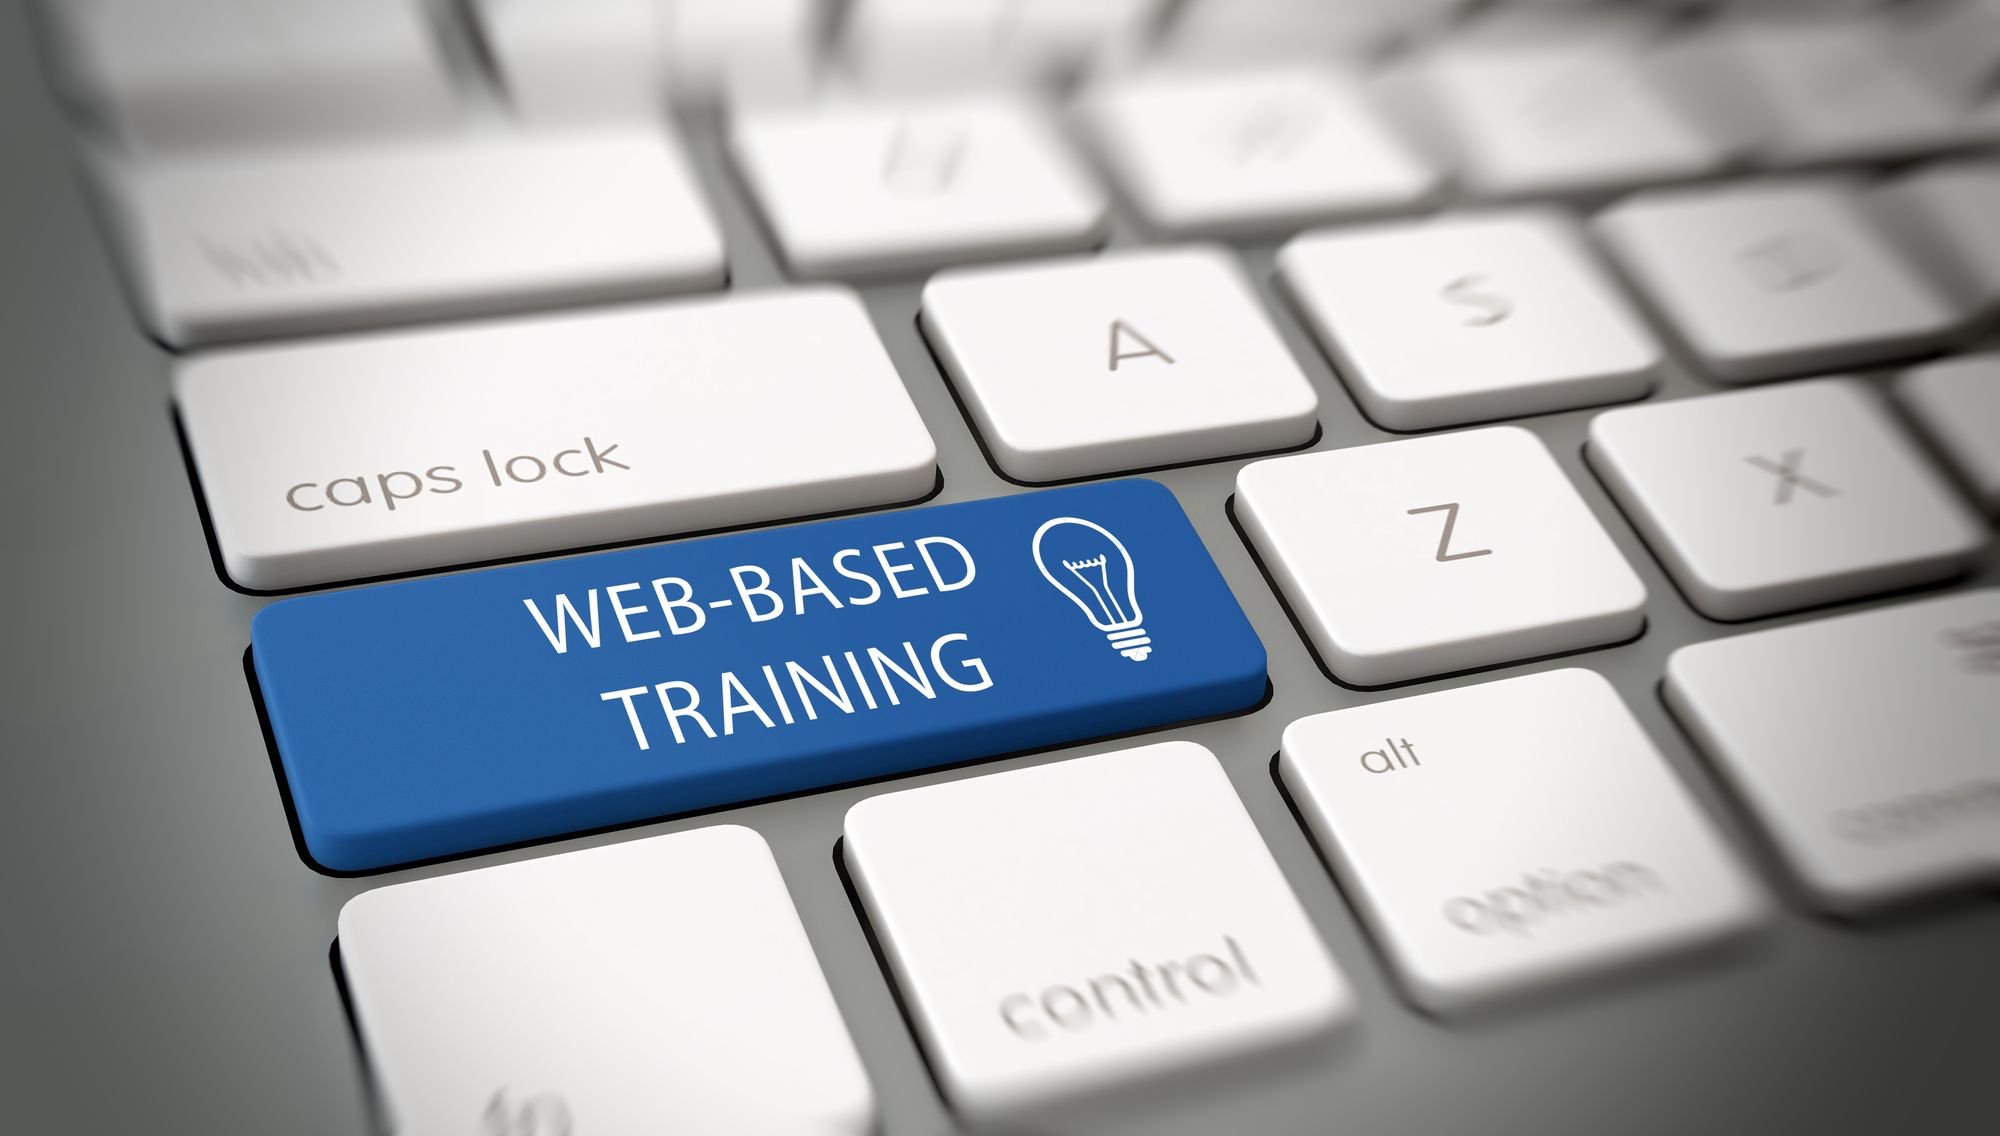 Live Web-based Training